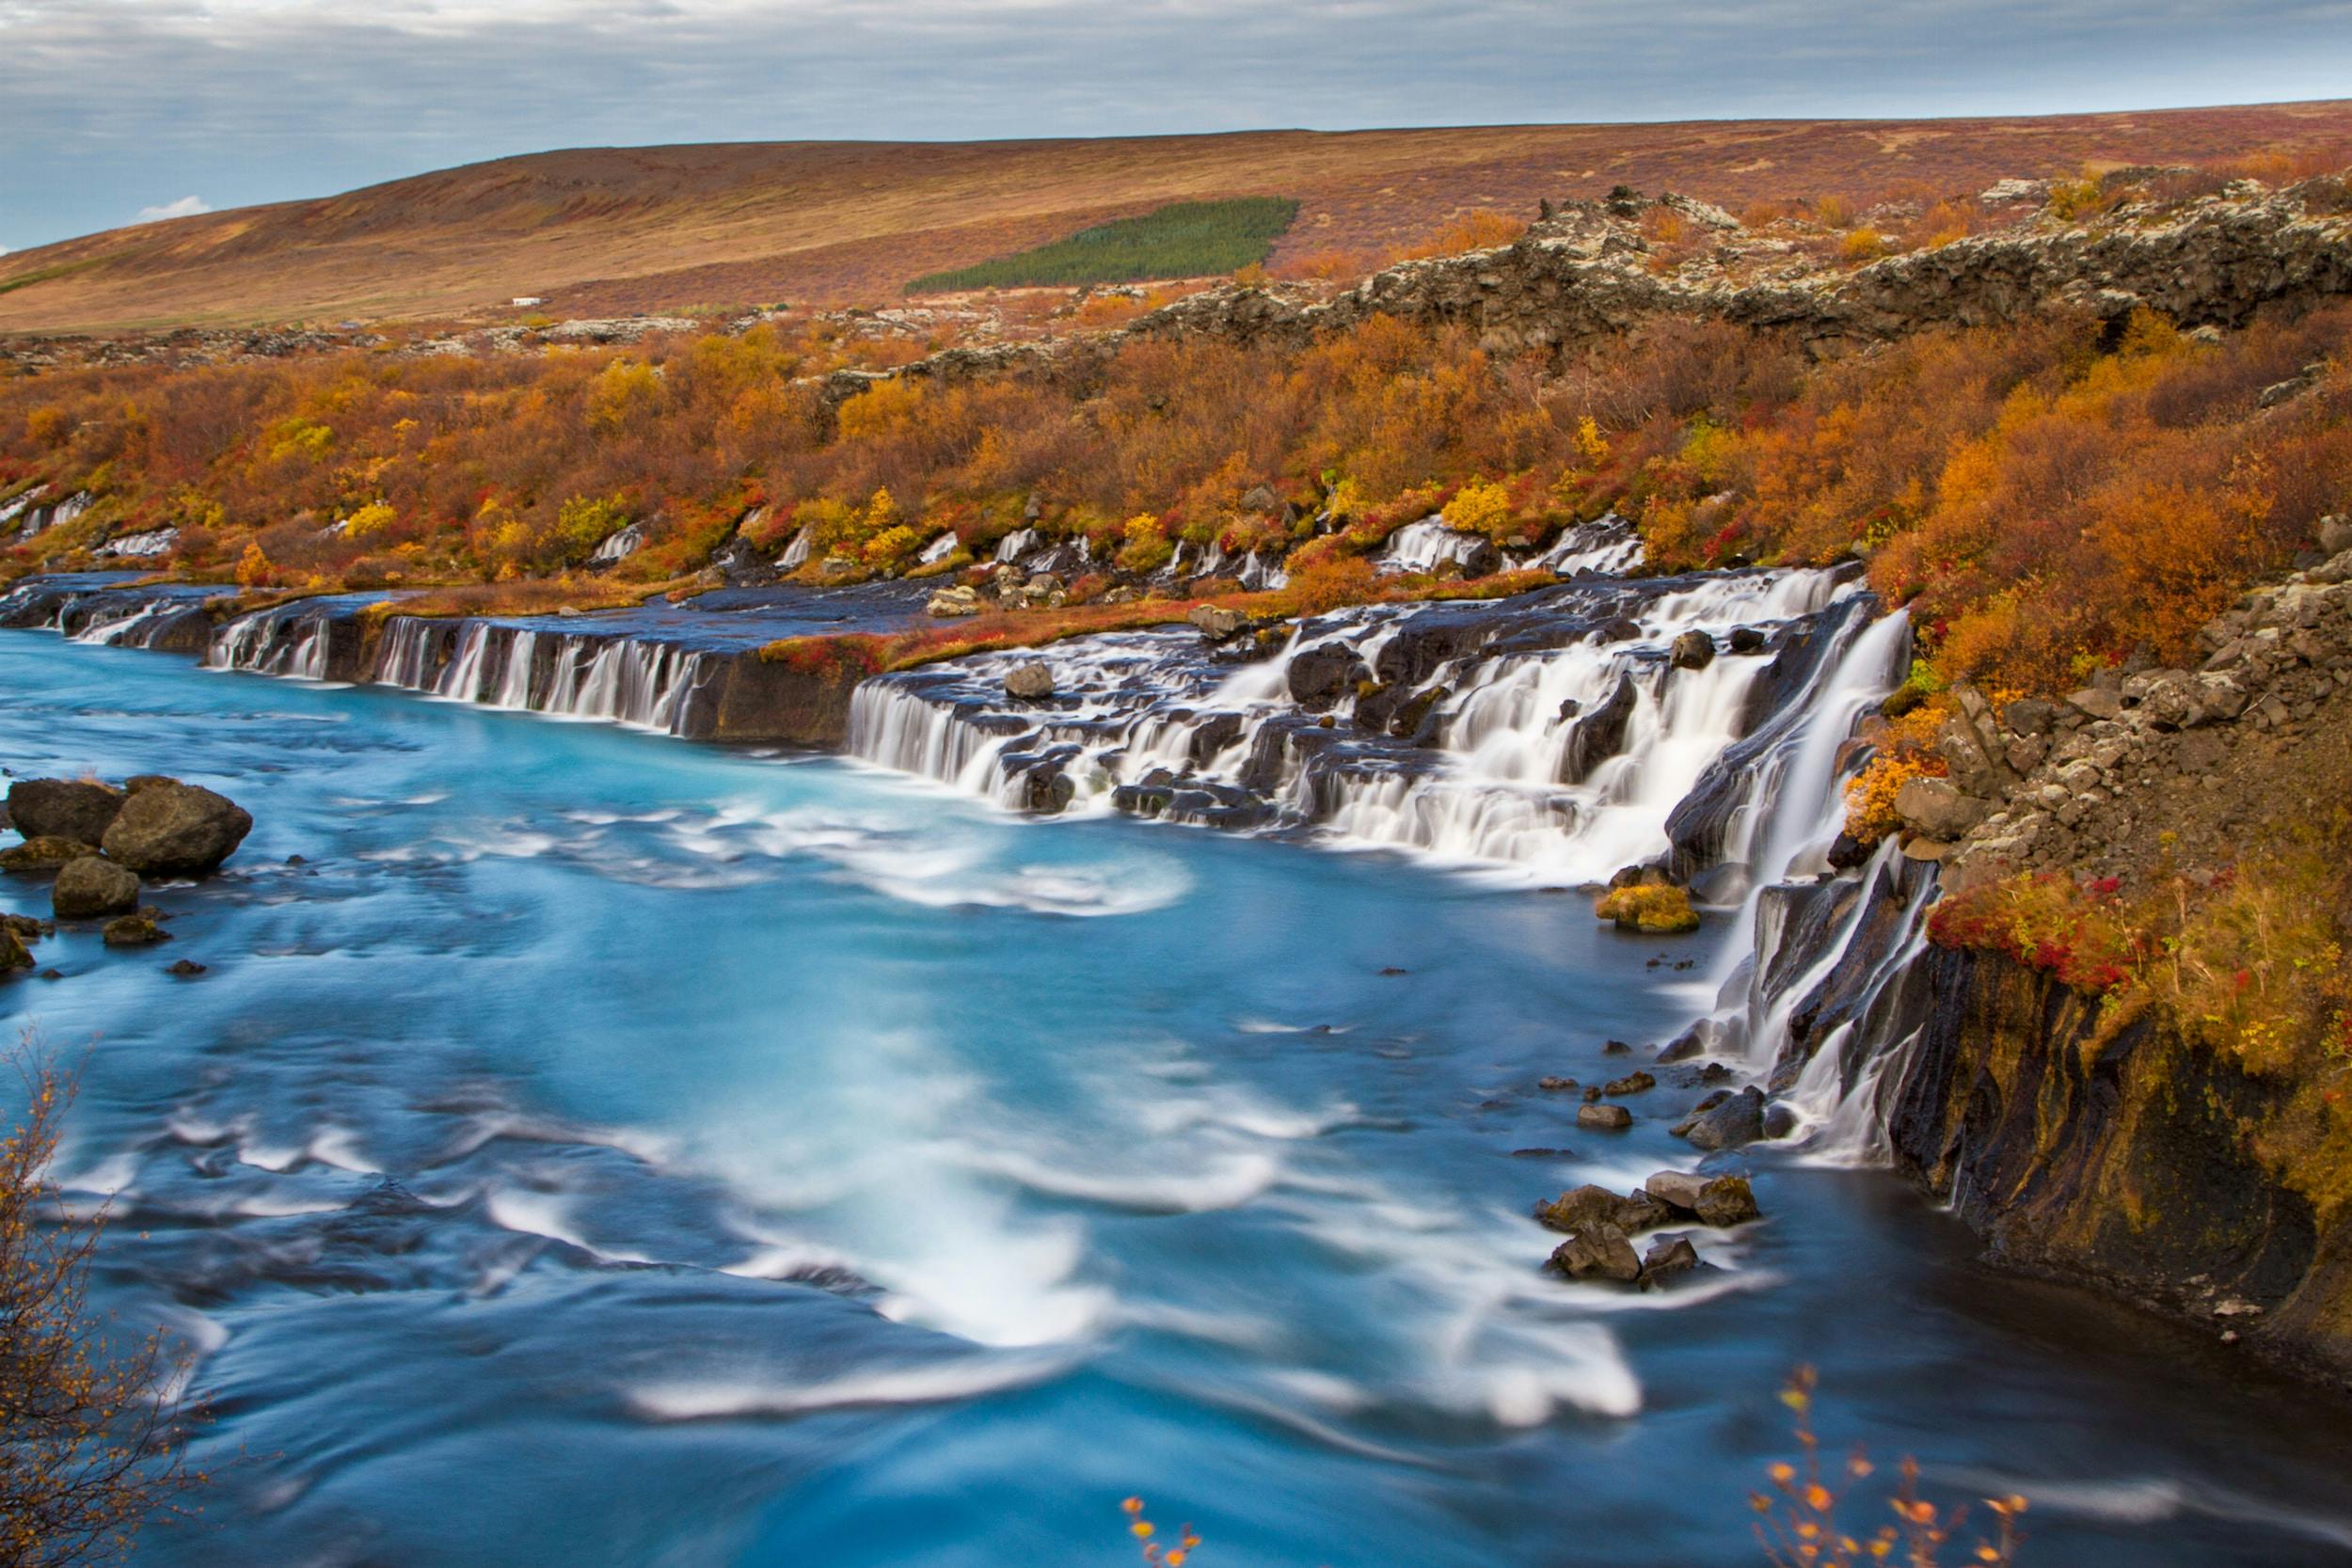 ภาพน้ำตกไหลลงไปยังแม่น้ำที่งดงามในทางตะวันตกของประเทศไอซ์แลนด์